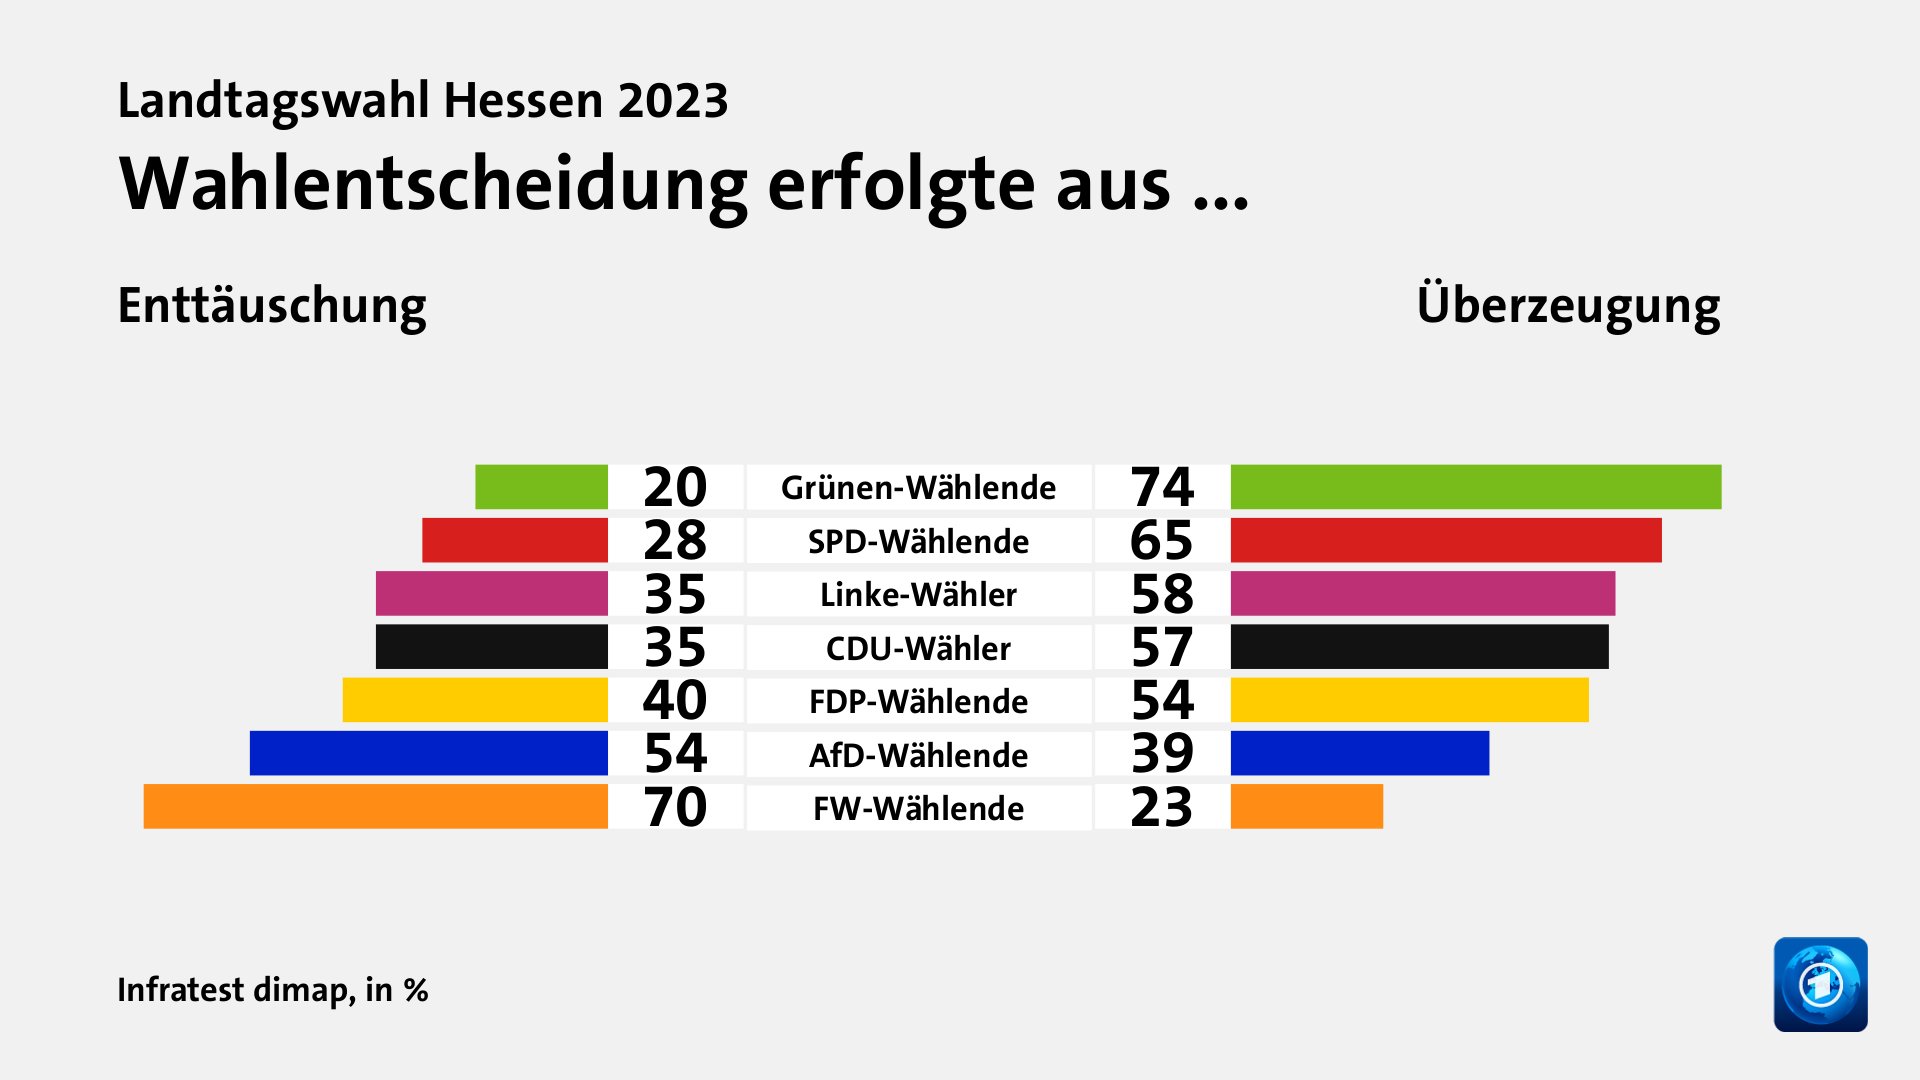 Wahlentscheidung erfolgte aus ... (in %) Grünen-Wählende: Enttäuschung 20, Überzeugung 74; SPD-Wählende: Enttäuschung 28, Überzeugung 65; Linke-Wähler: Enttäuschung 35, Überzeugung 58; CDU-Wähler: Enttäuschung 35, Überzeugung 57; FDP-Wählende: Enttäuschung 40, Überzeugung 54; AfD-Wählende: Enttäuschung 54, Überzeugung 39; FW-Wählende: Enttäuschung 70, Überzeugung 23; Quelle: Infratest dimap